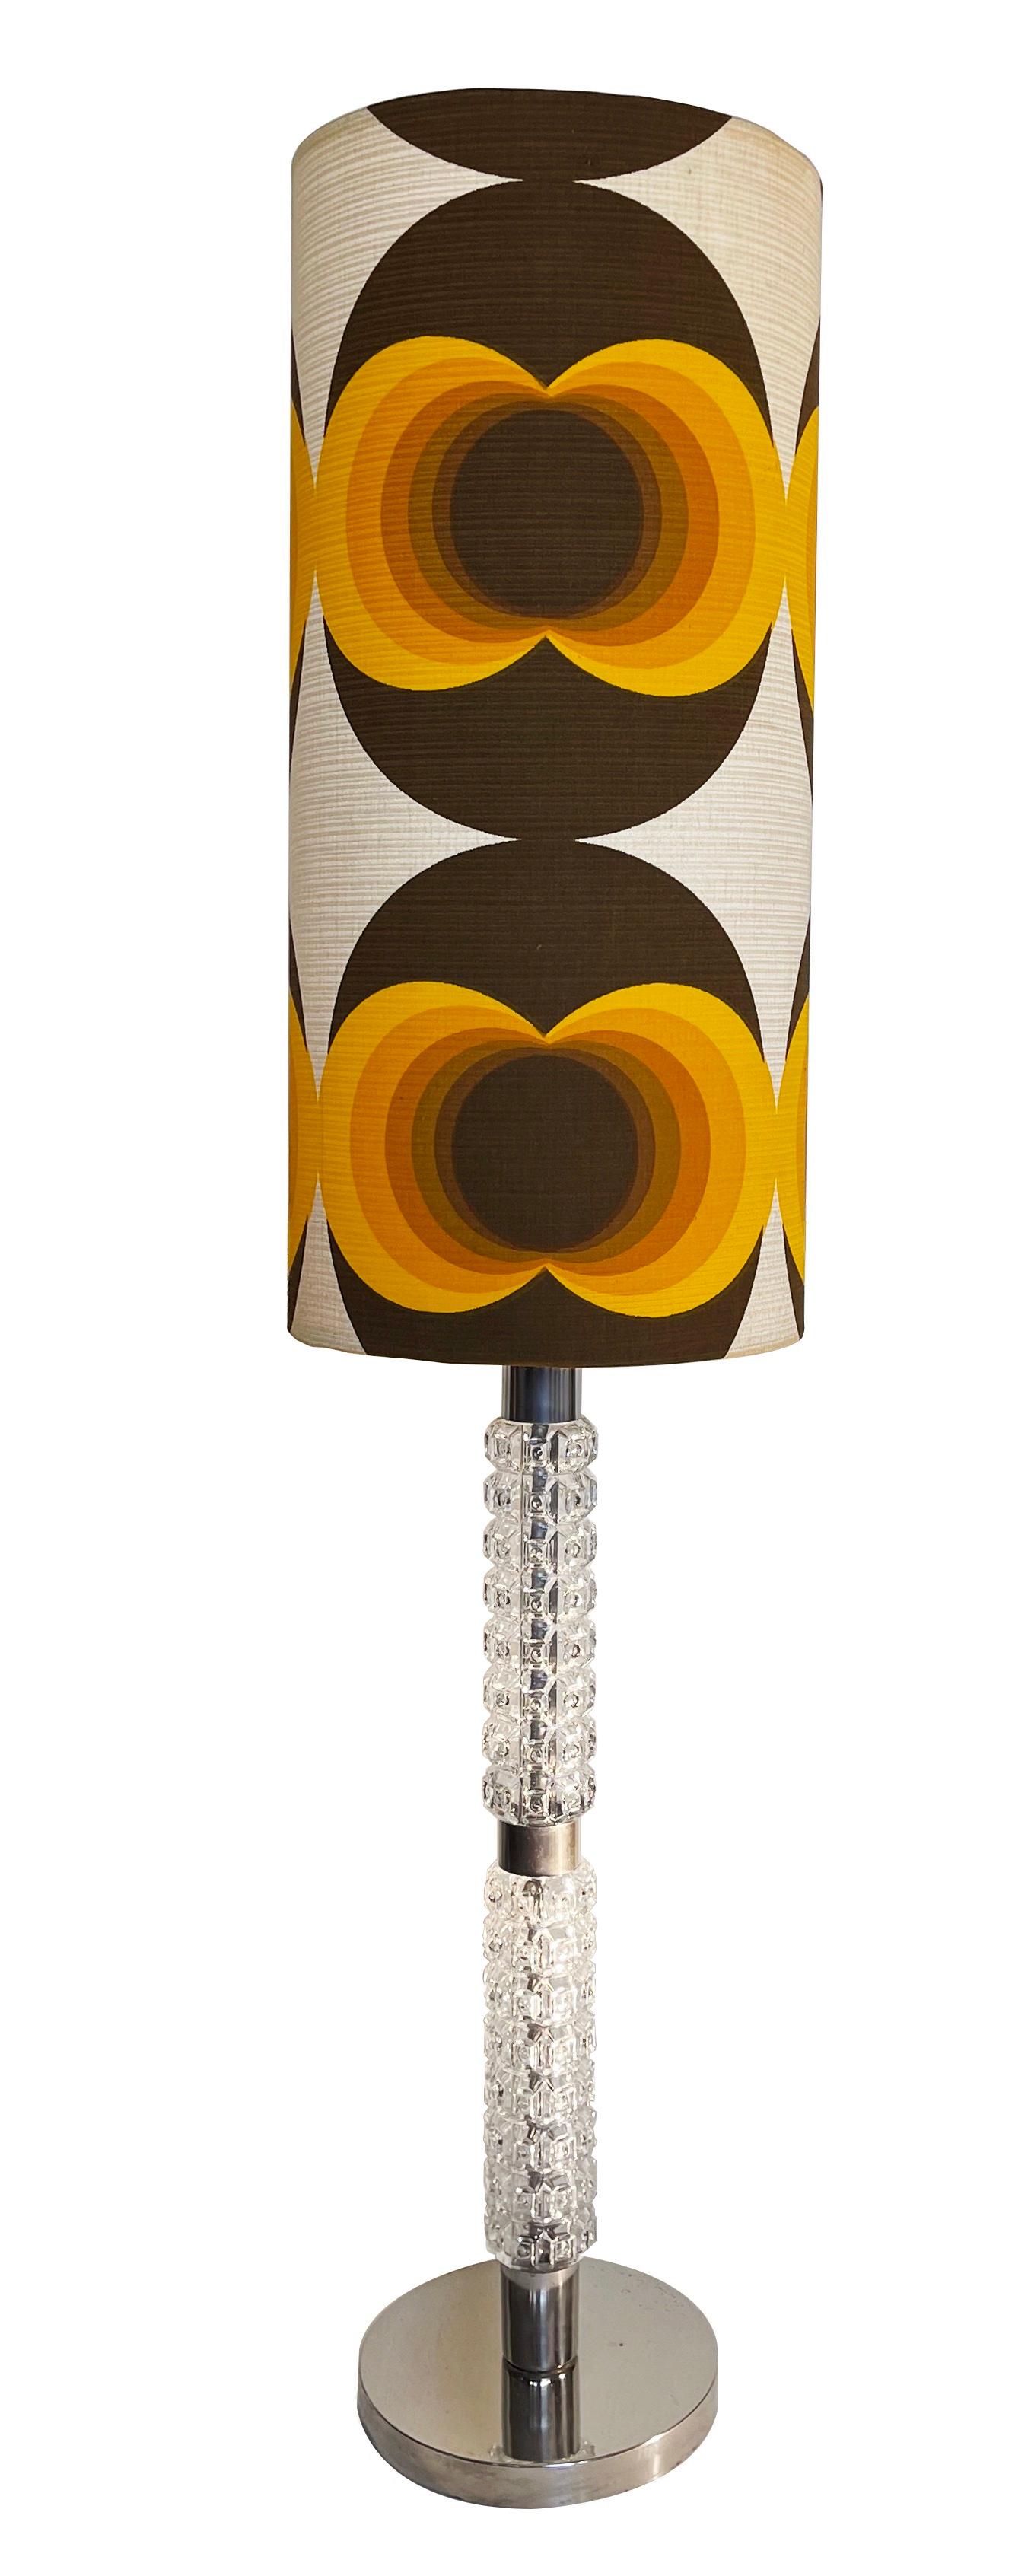 Grand lampadaire expressif - ici avec le meilleur du design allemand des années 60-70.
Abat-jour aux couleurs vibrantes et aux motifs tout aussi sauvages dans les tons orange, marron et beige, associé à un classique absolu des années 70 : un pied